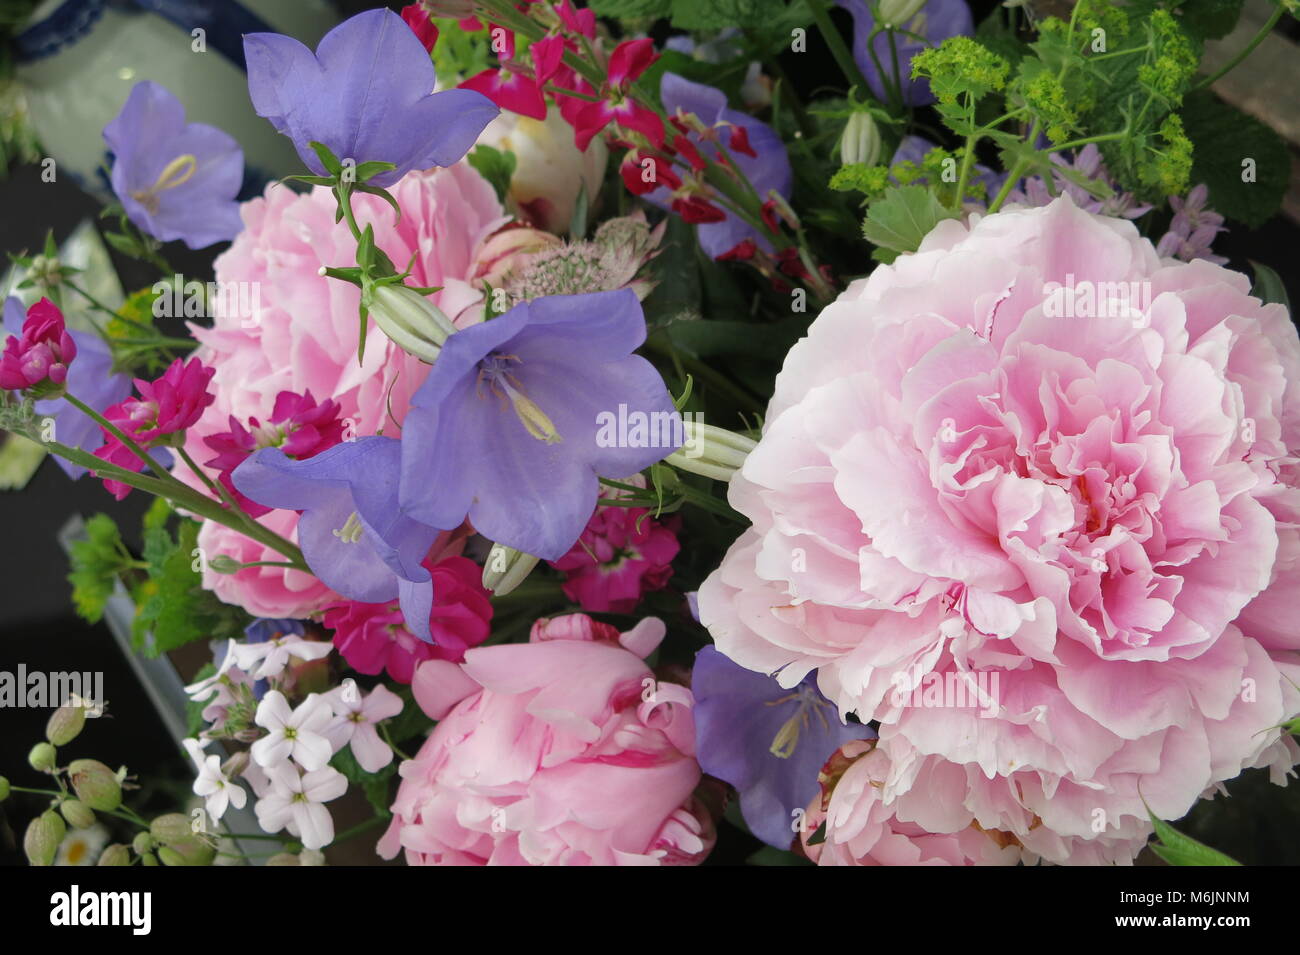 Eine feminine und romantische Blume Anzeige der rosa Pfingstrosen und blauen glockenförmigen Blüten Stockfoto